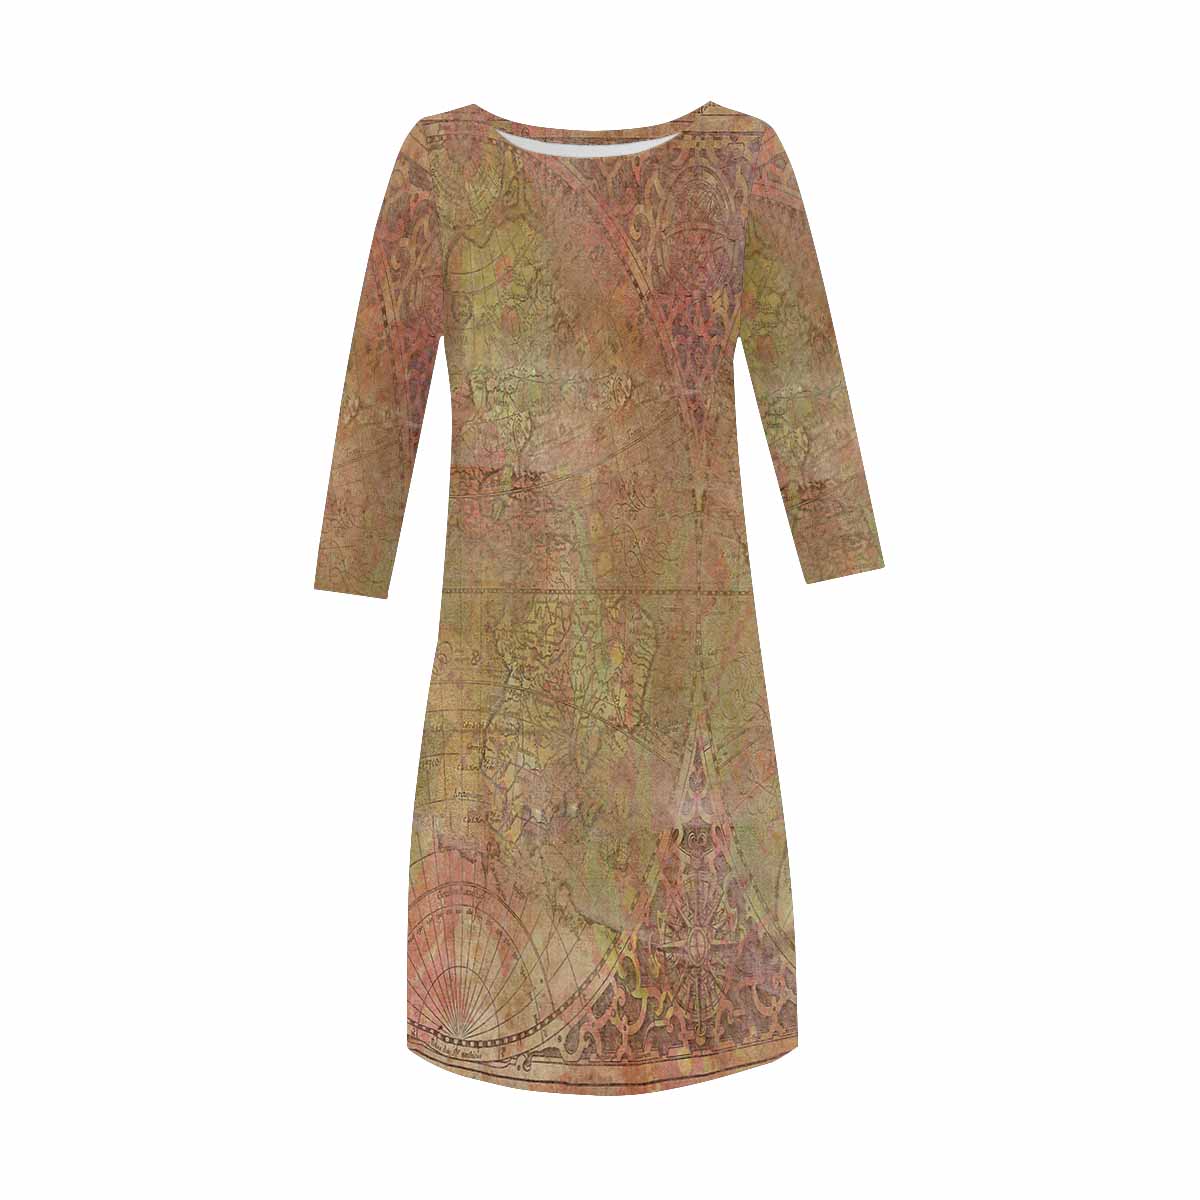 Antique General loose dress, MODEL 29532, design 62